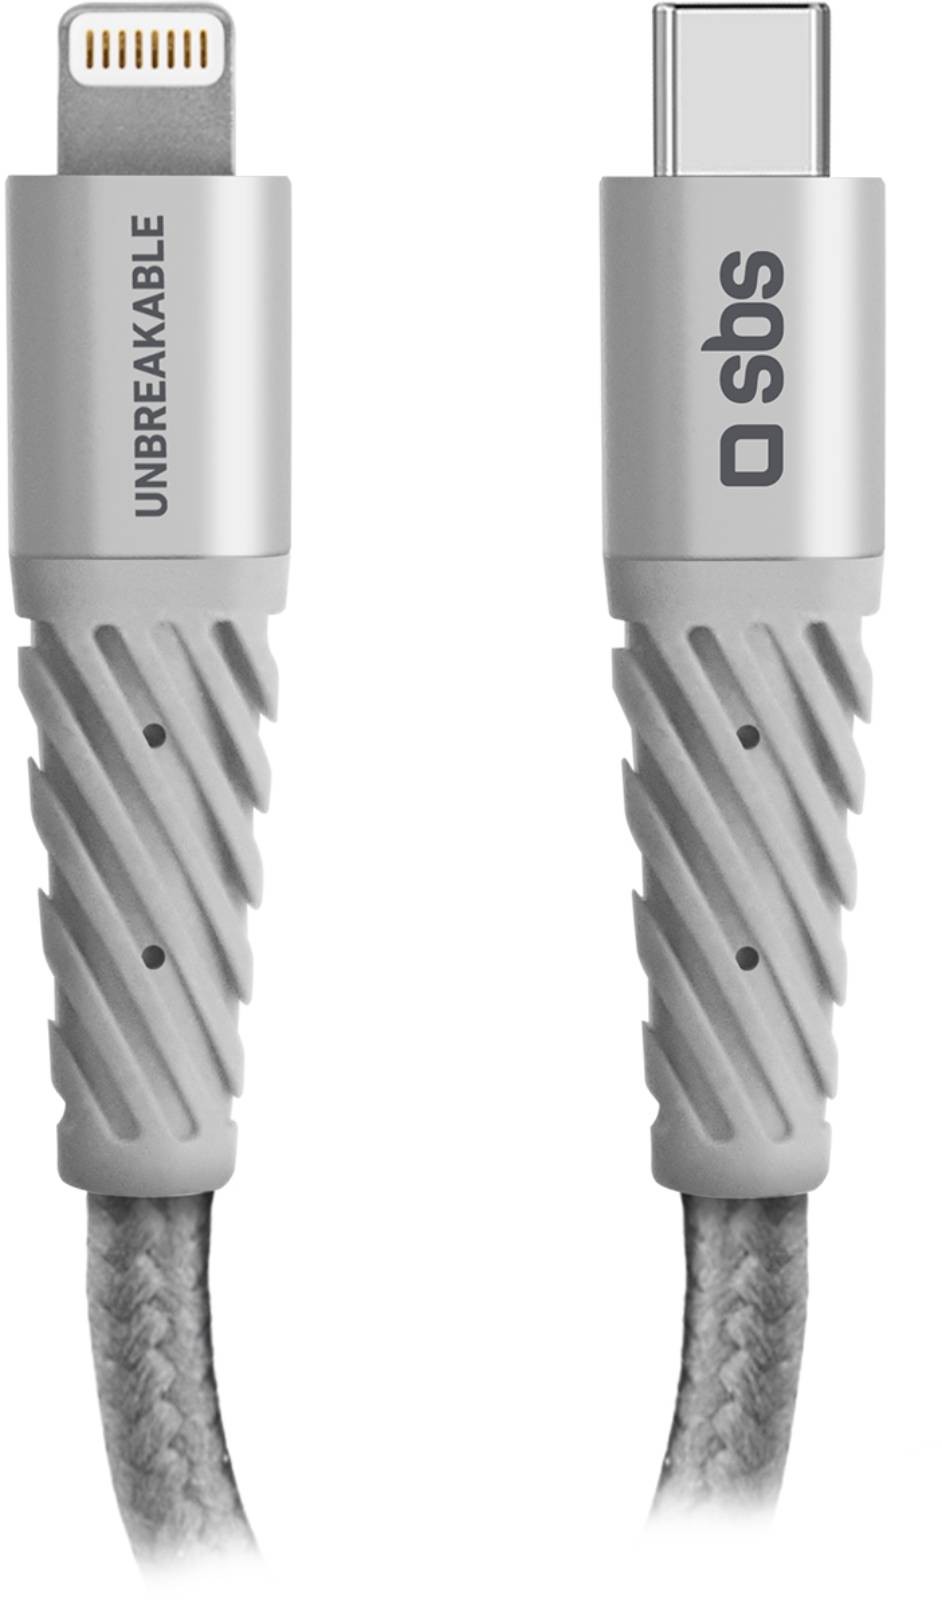 SBS Câble USB   CABLEUSBC-LIGHTNING